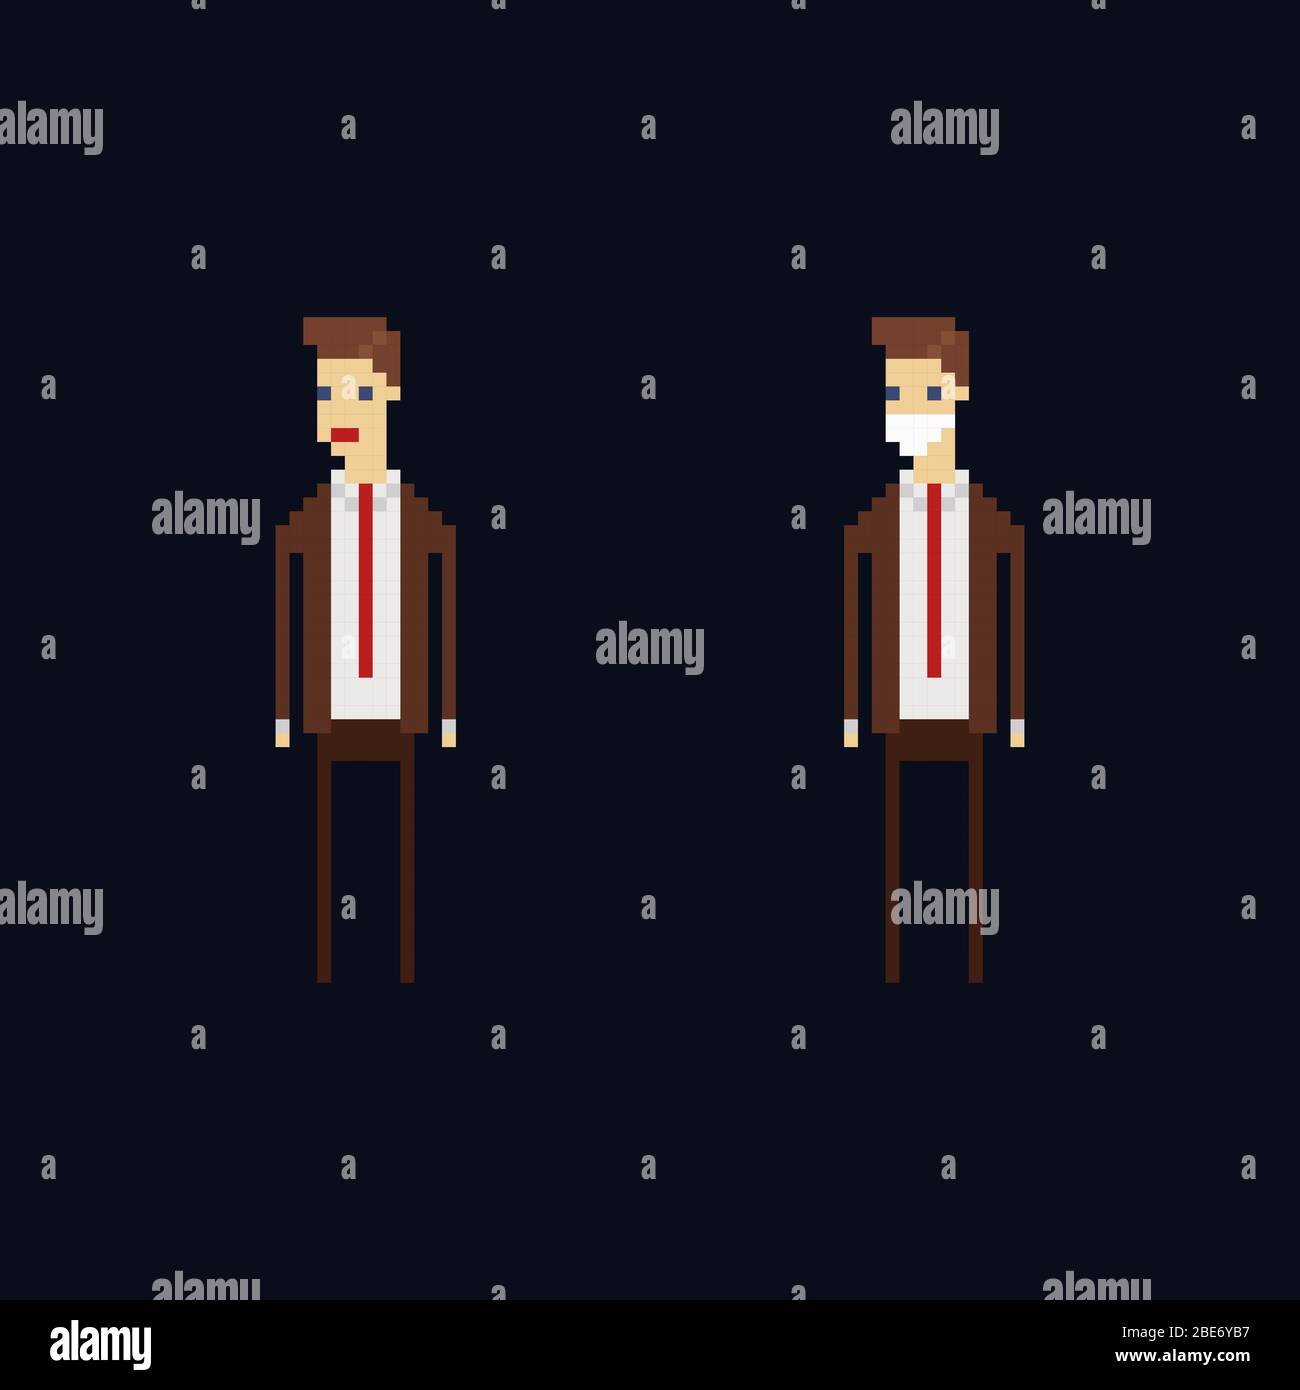 Pixel art vecteur personnage - Caricature homme de bureau portant une suite  brune, cravate rouge et un masque de protection médique. Illustration 8 bits  isolée Image Vectorielle Stock - Alamy